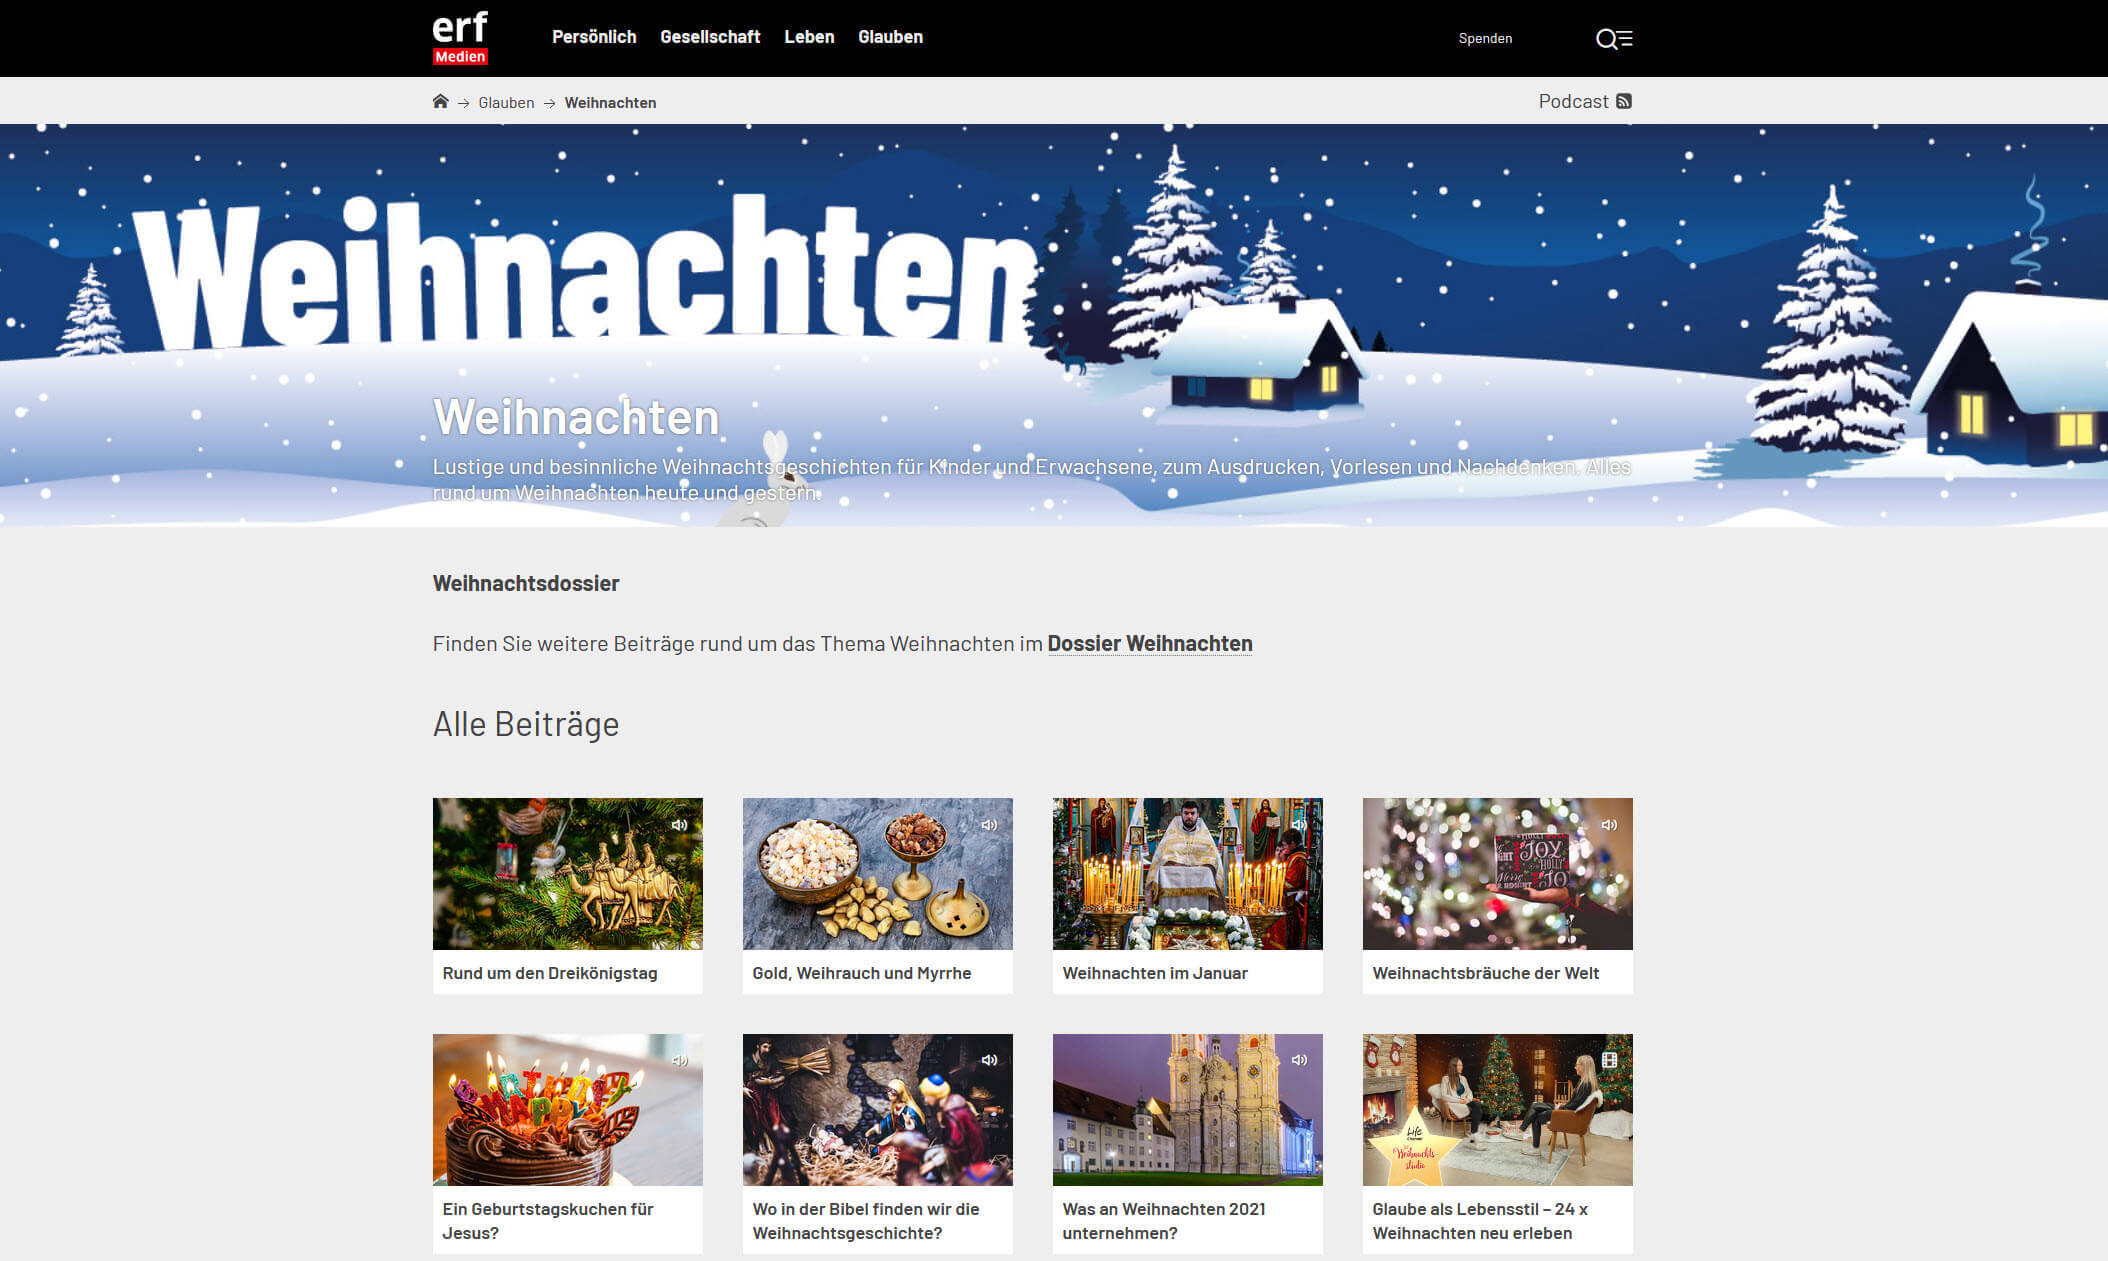 Weihnachten in Radio und TV: erf-medien.ch